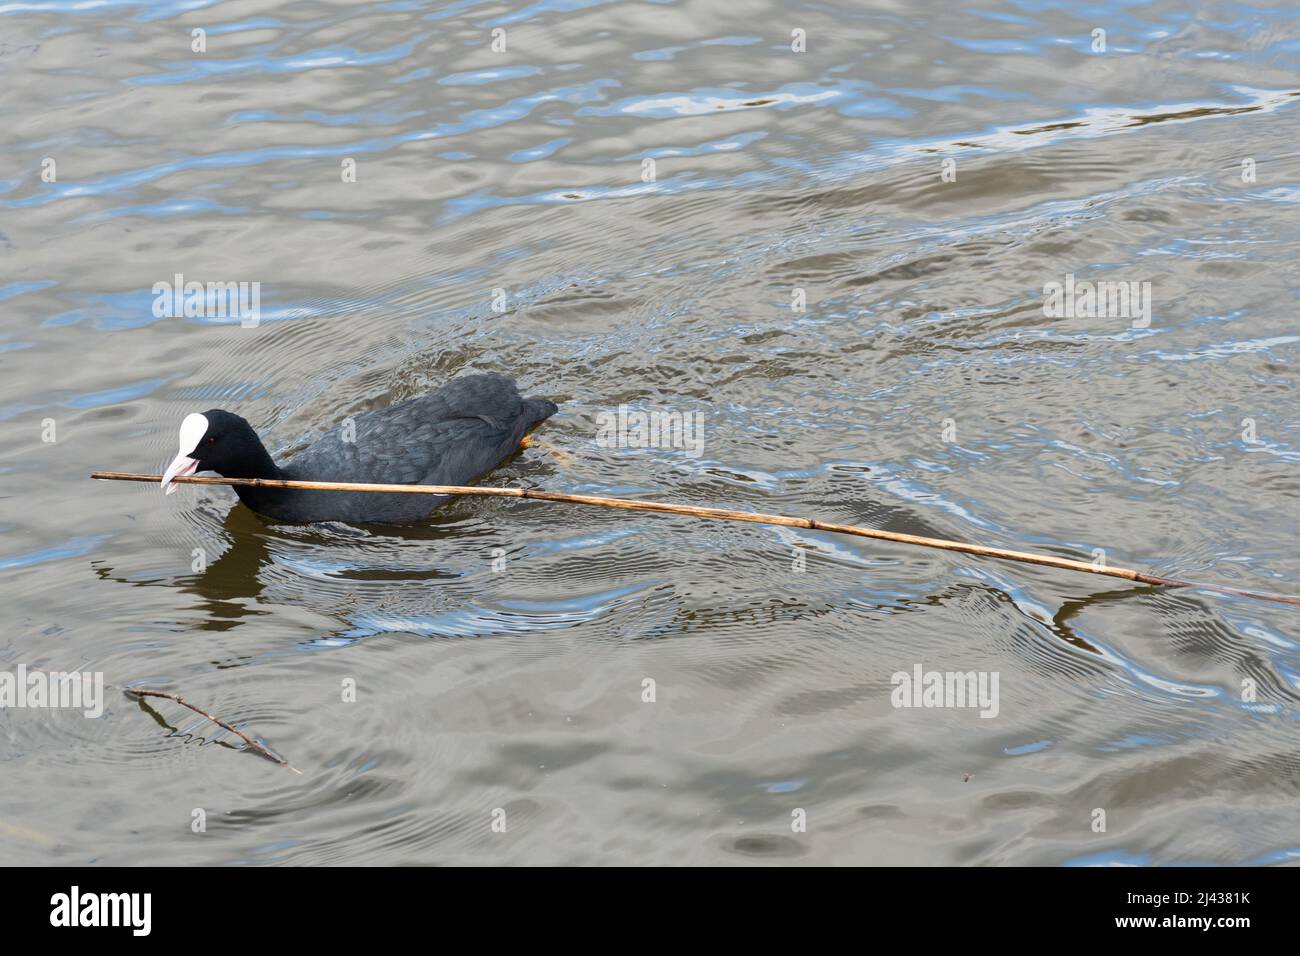 Un coot (Fulica atra) nageant sur un lac apportant du matériel de nidification, un long bâton, pour construire un nid au printemps, au Royaume-Uni Banque D'Images